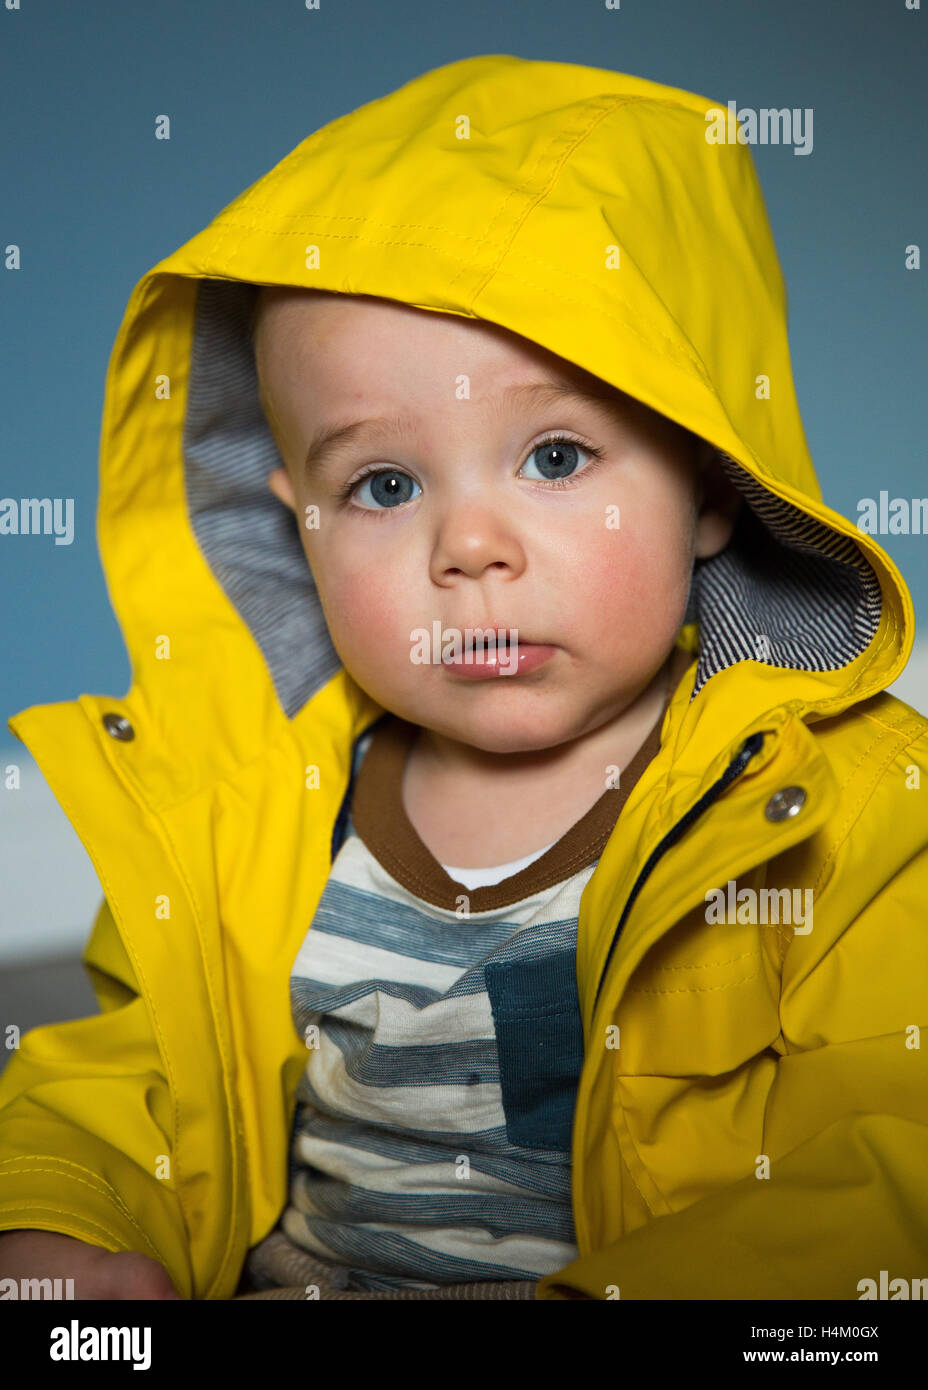 Little blue eye boy wearing a rain coat Stock Photo